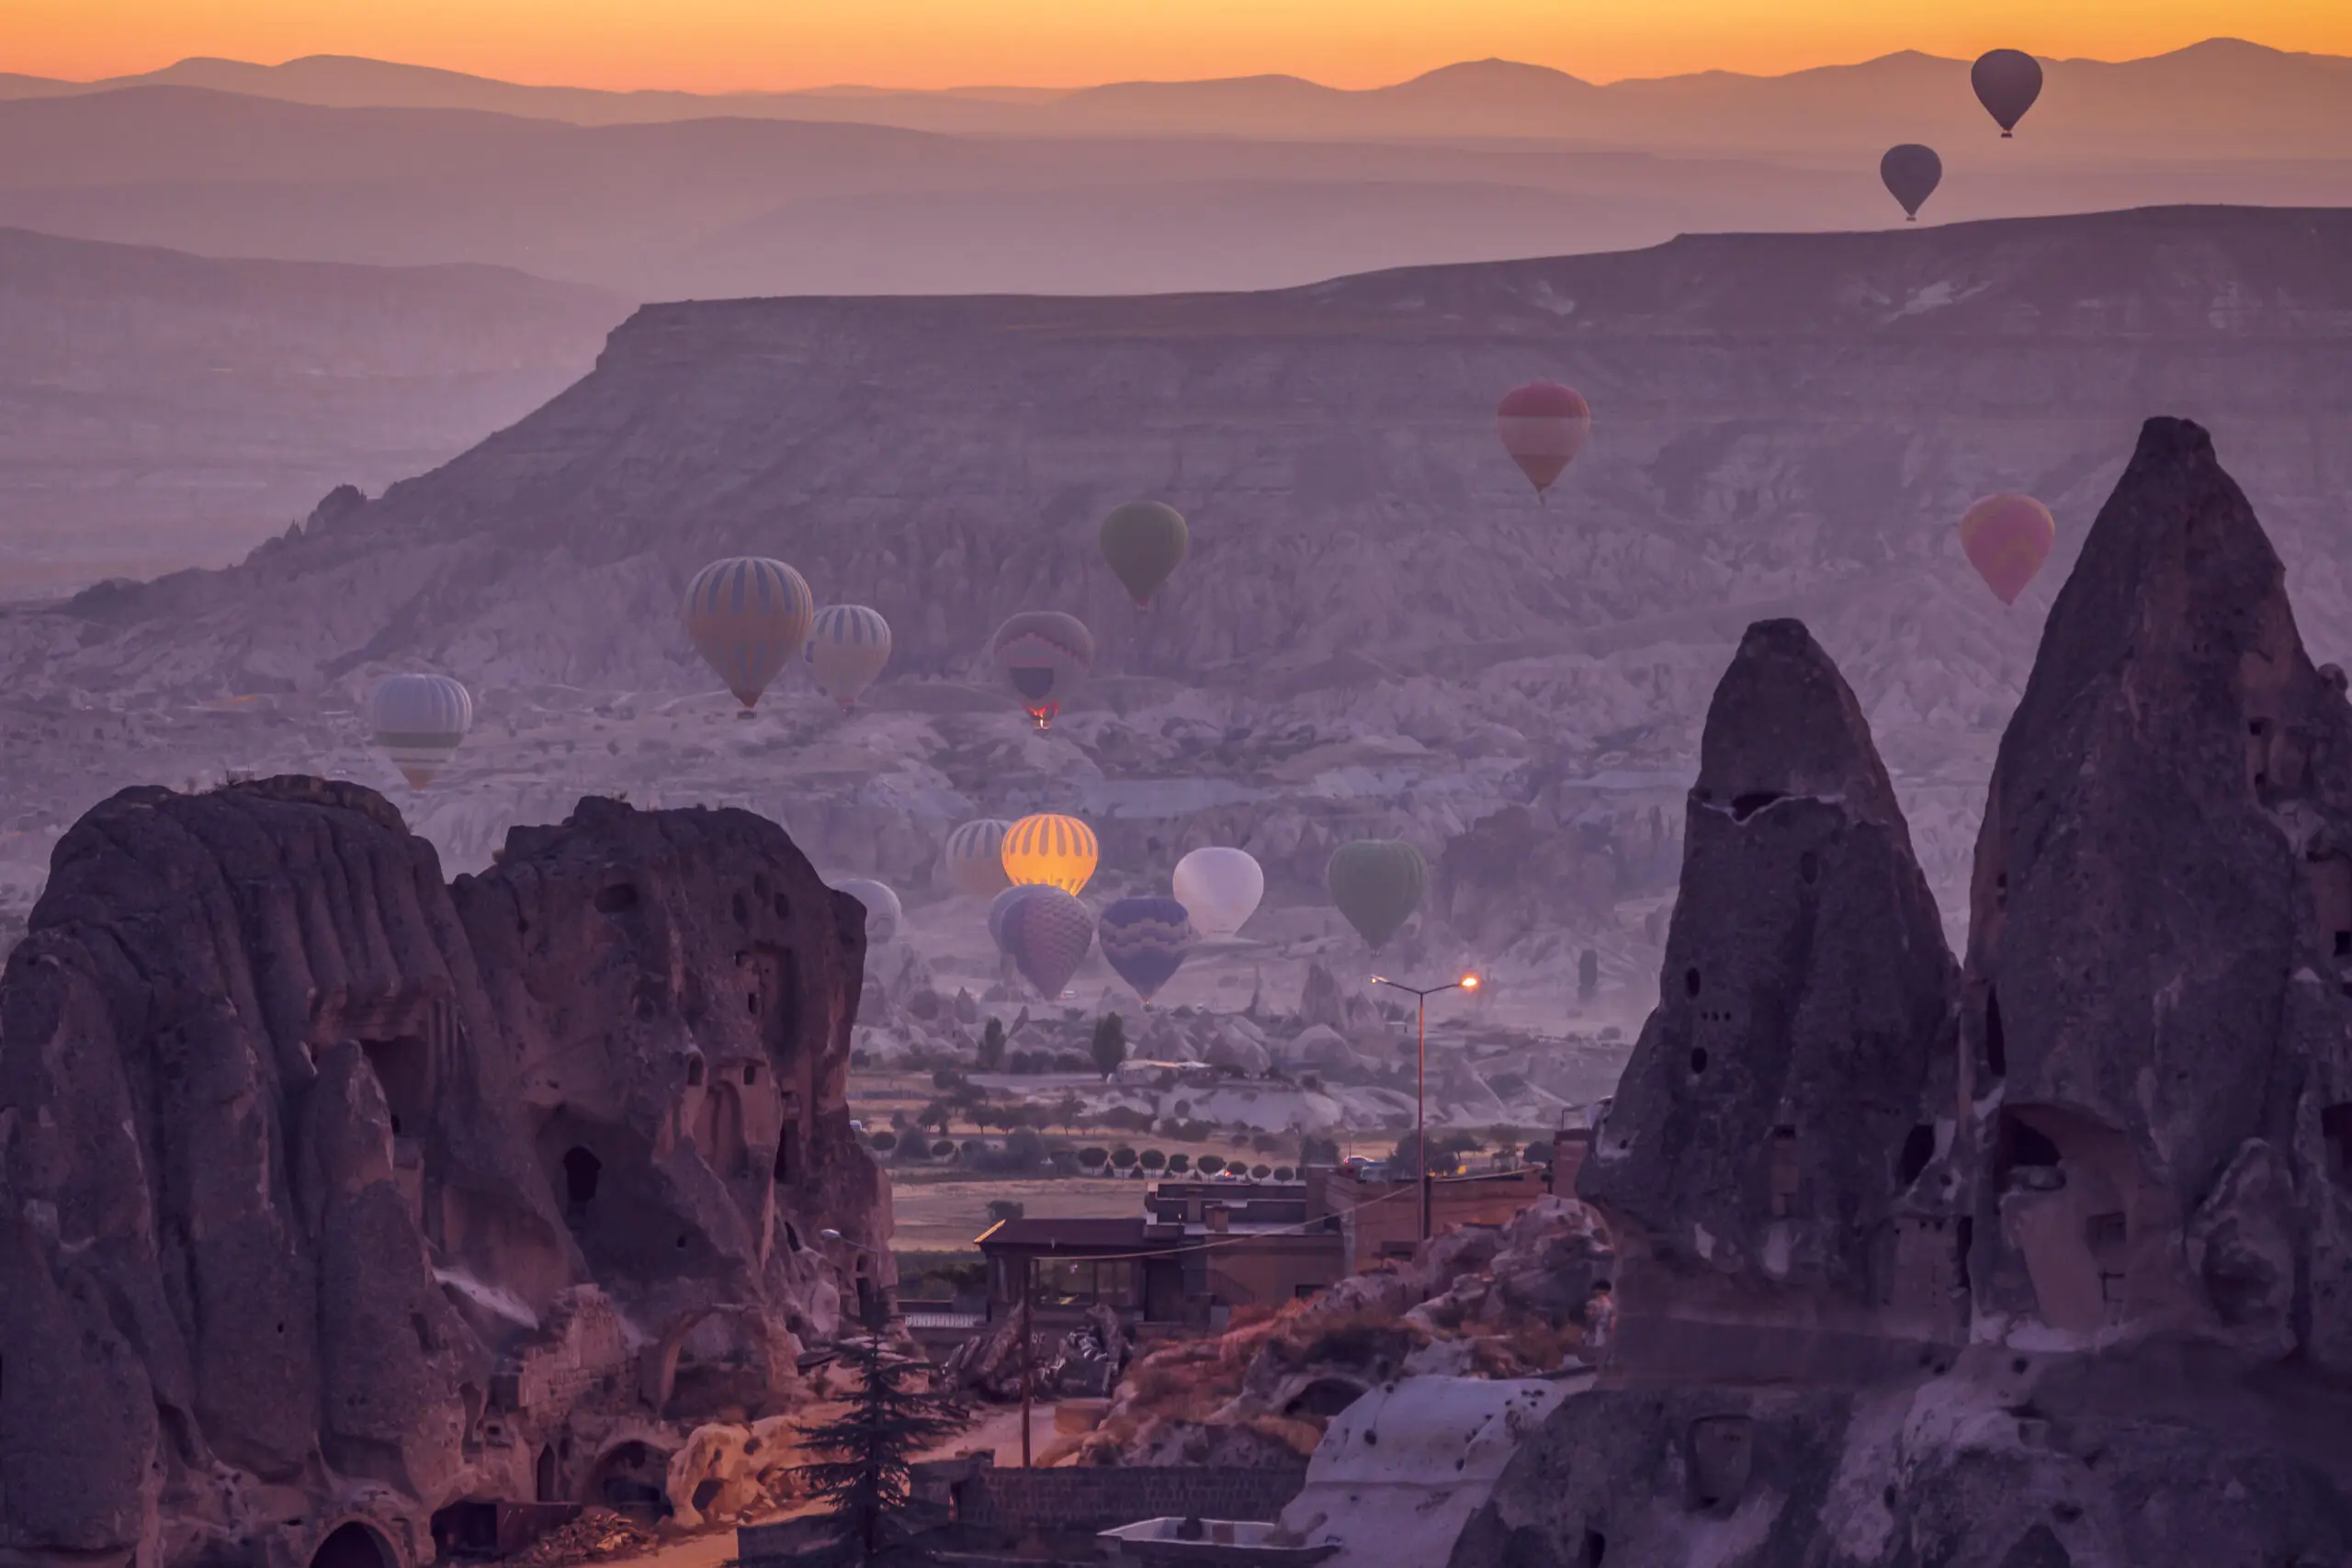 Wandbild (6035) rising ballons by Chantal Reed/HUBER IMAGES präsentiert: Kreatives,Natur,Landschaften,Asien,Berge,Sonstiges Kreatives